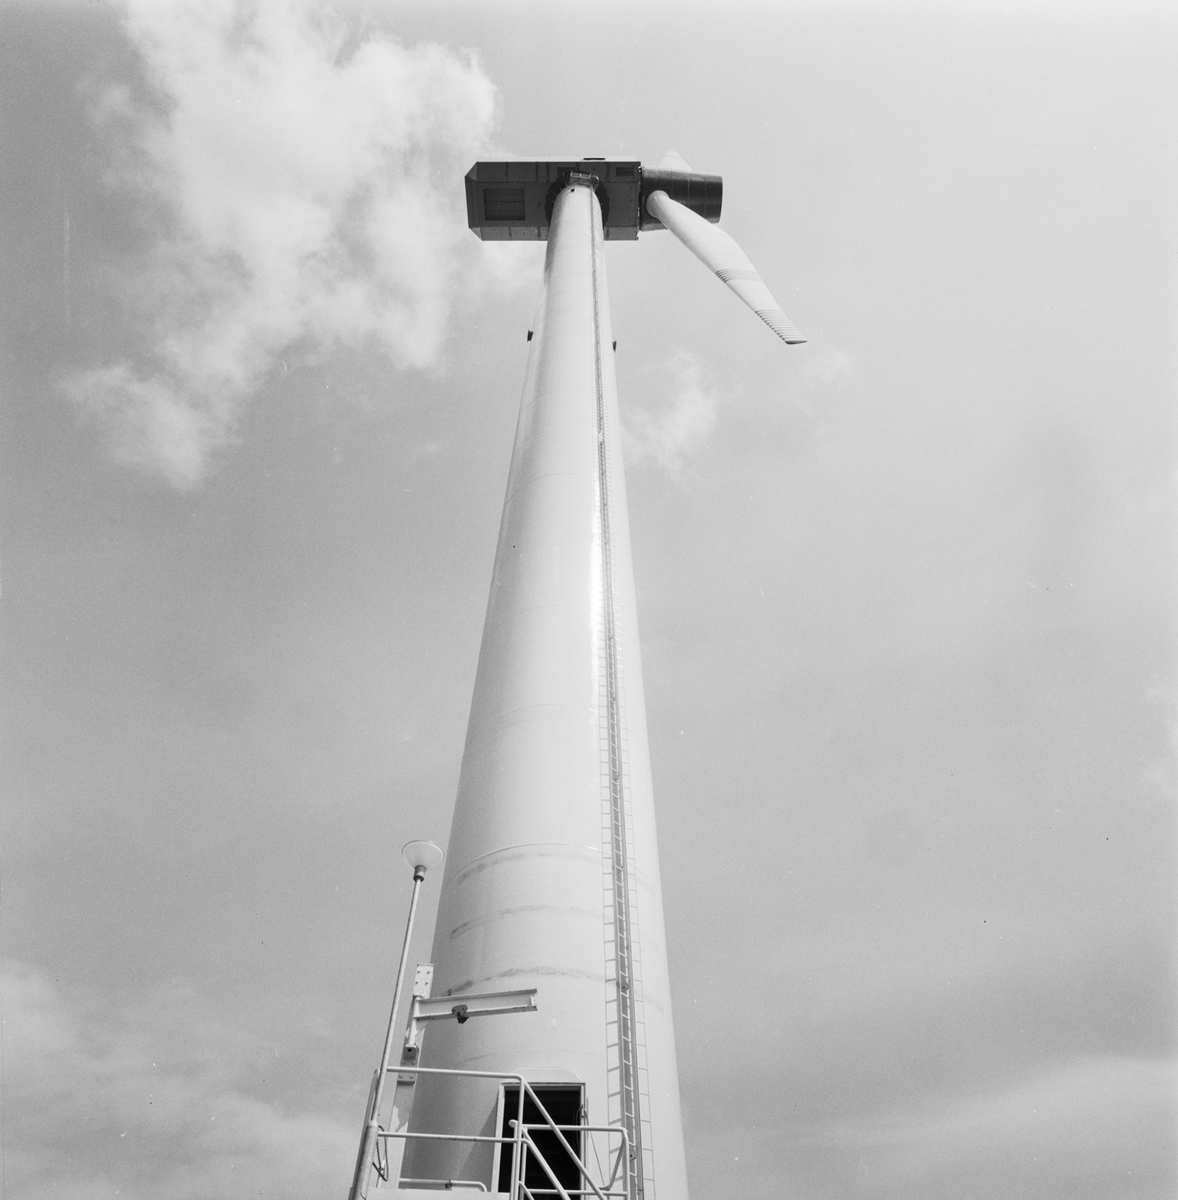 Vindkraftverket i Maglarp